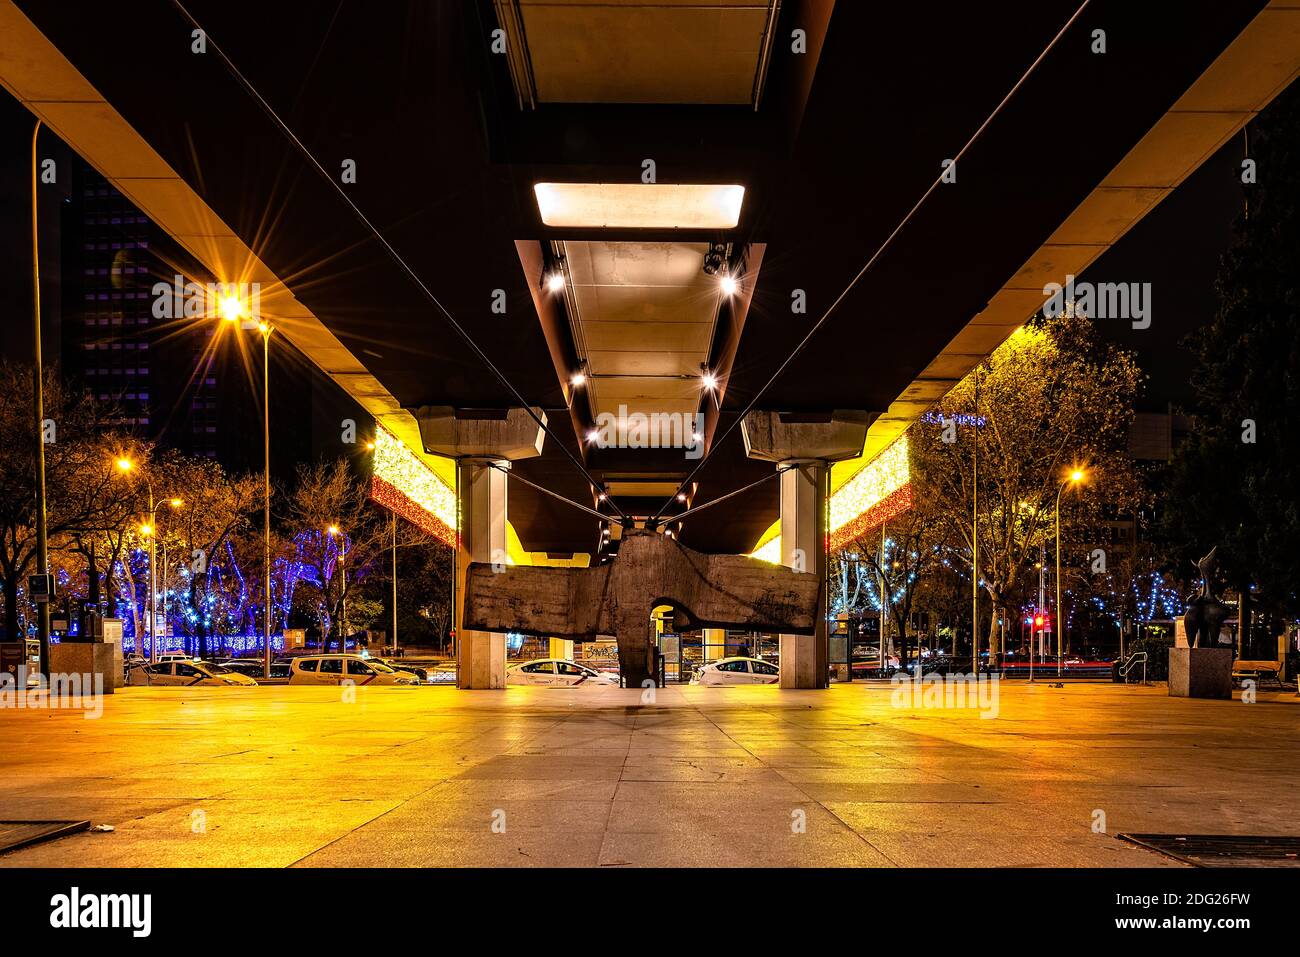 Madrid, Spain - December 6, 2020: Museum of Sculptures in La Castellana under Juan Bravo Bridge illuminated at Christmas Stock Photo